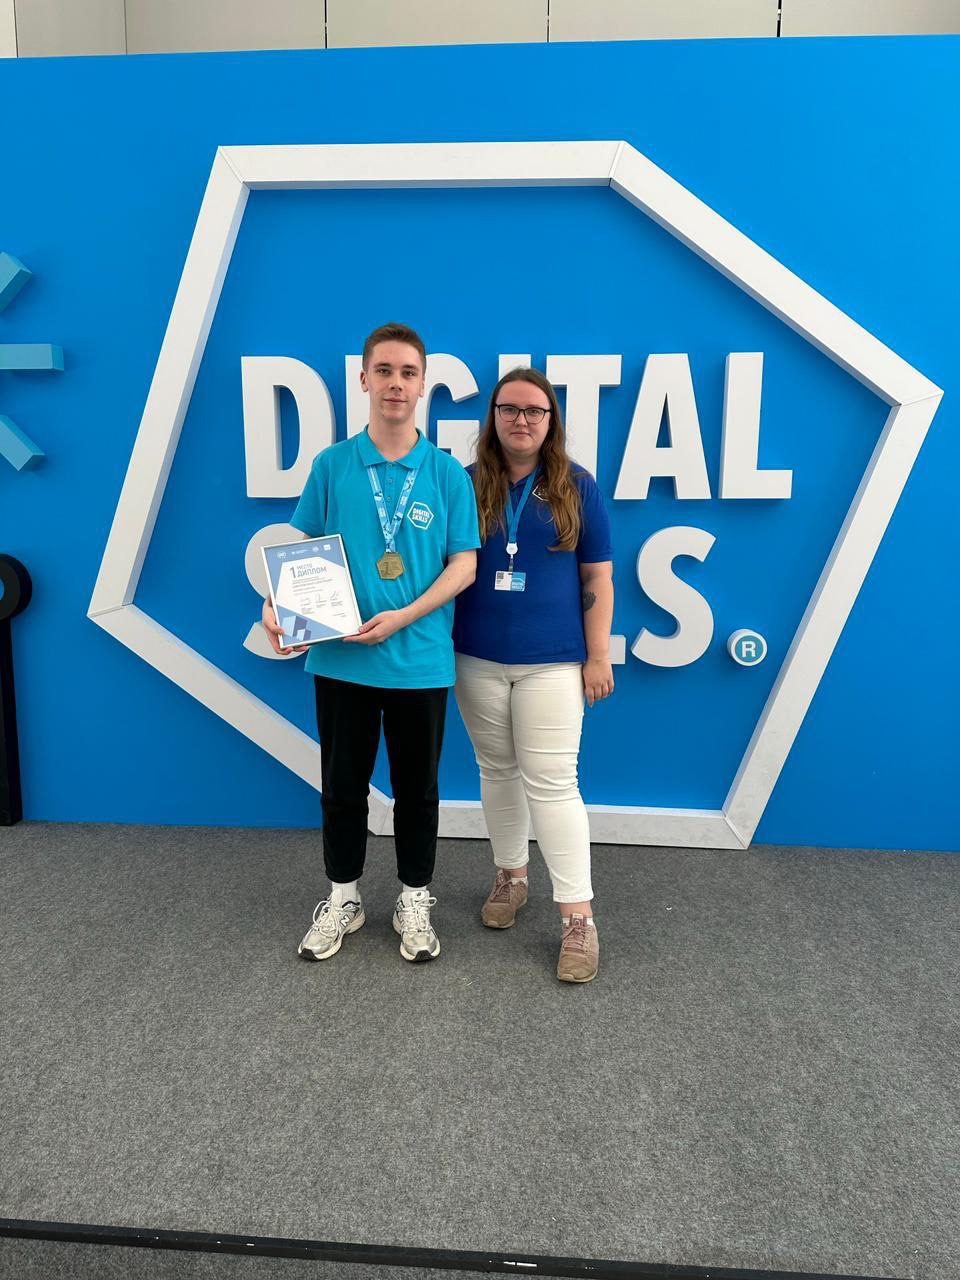 Студент Радиотехнического колледжа — победитель V отраслевого чемпионата в сфере цифровых технологий DigitalSkills!